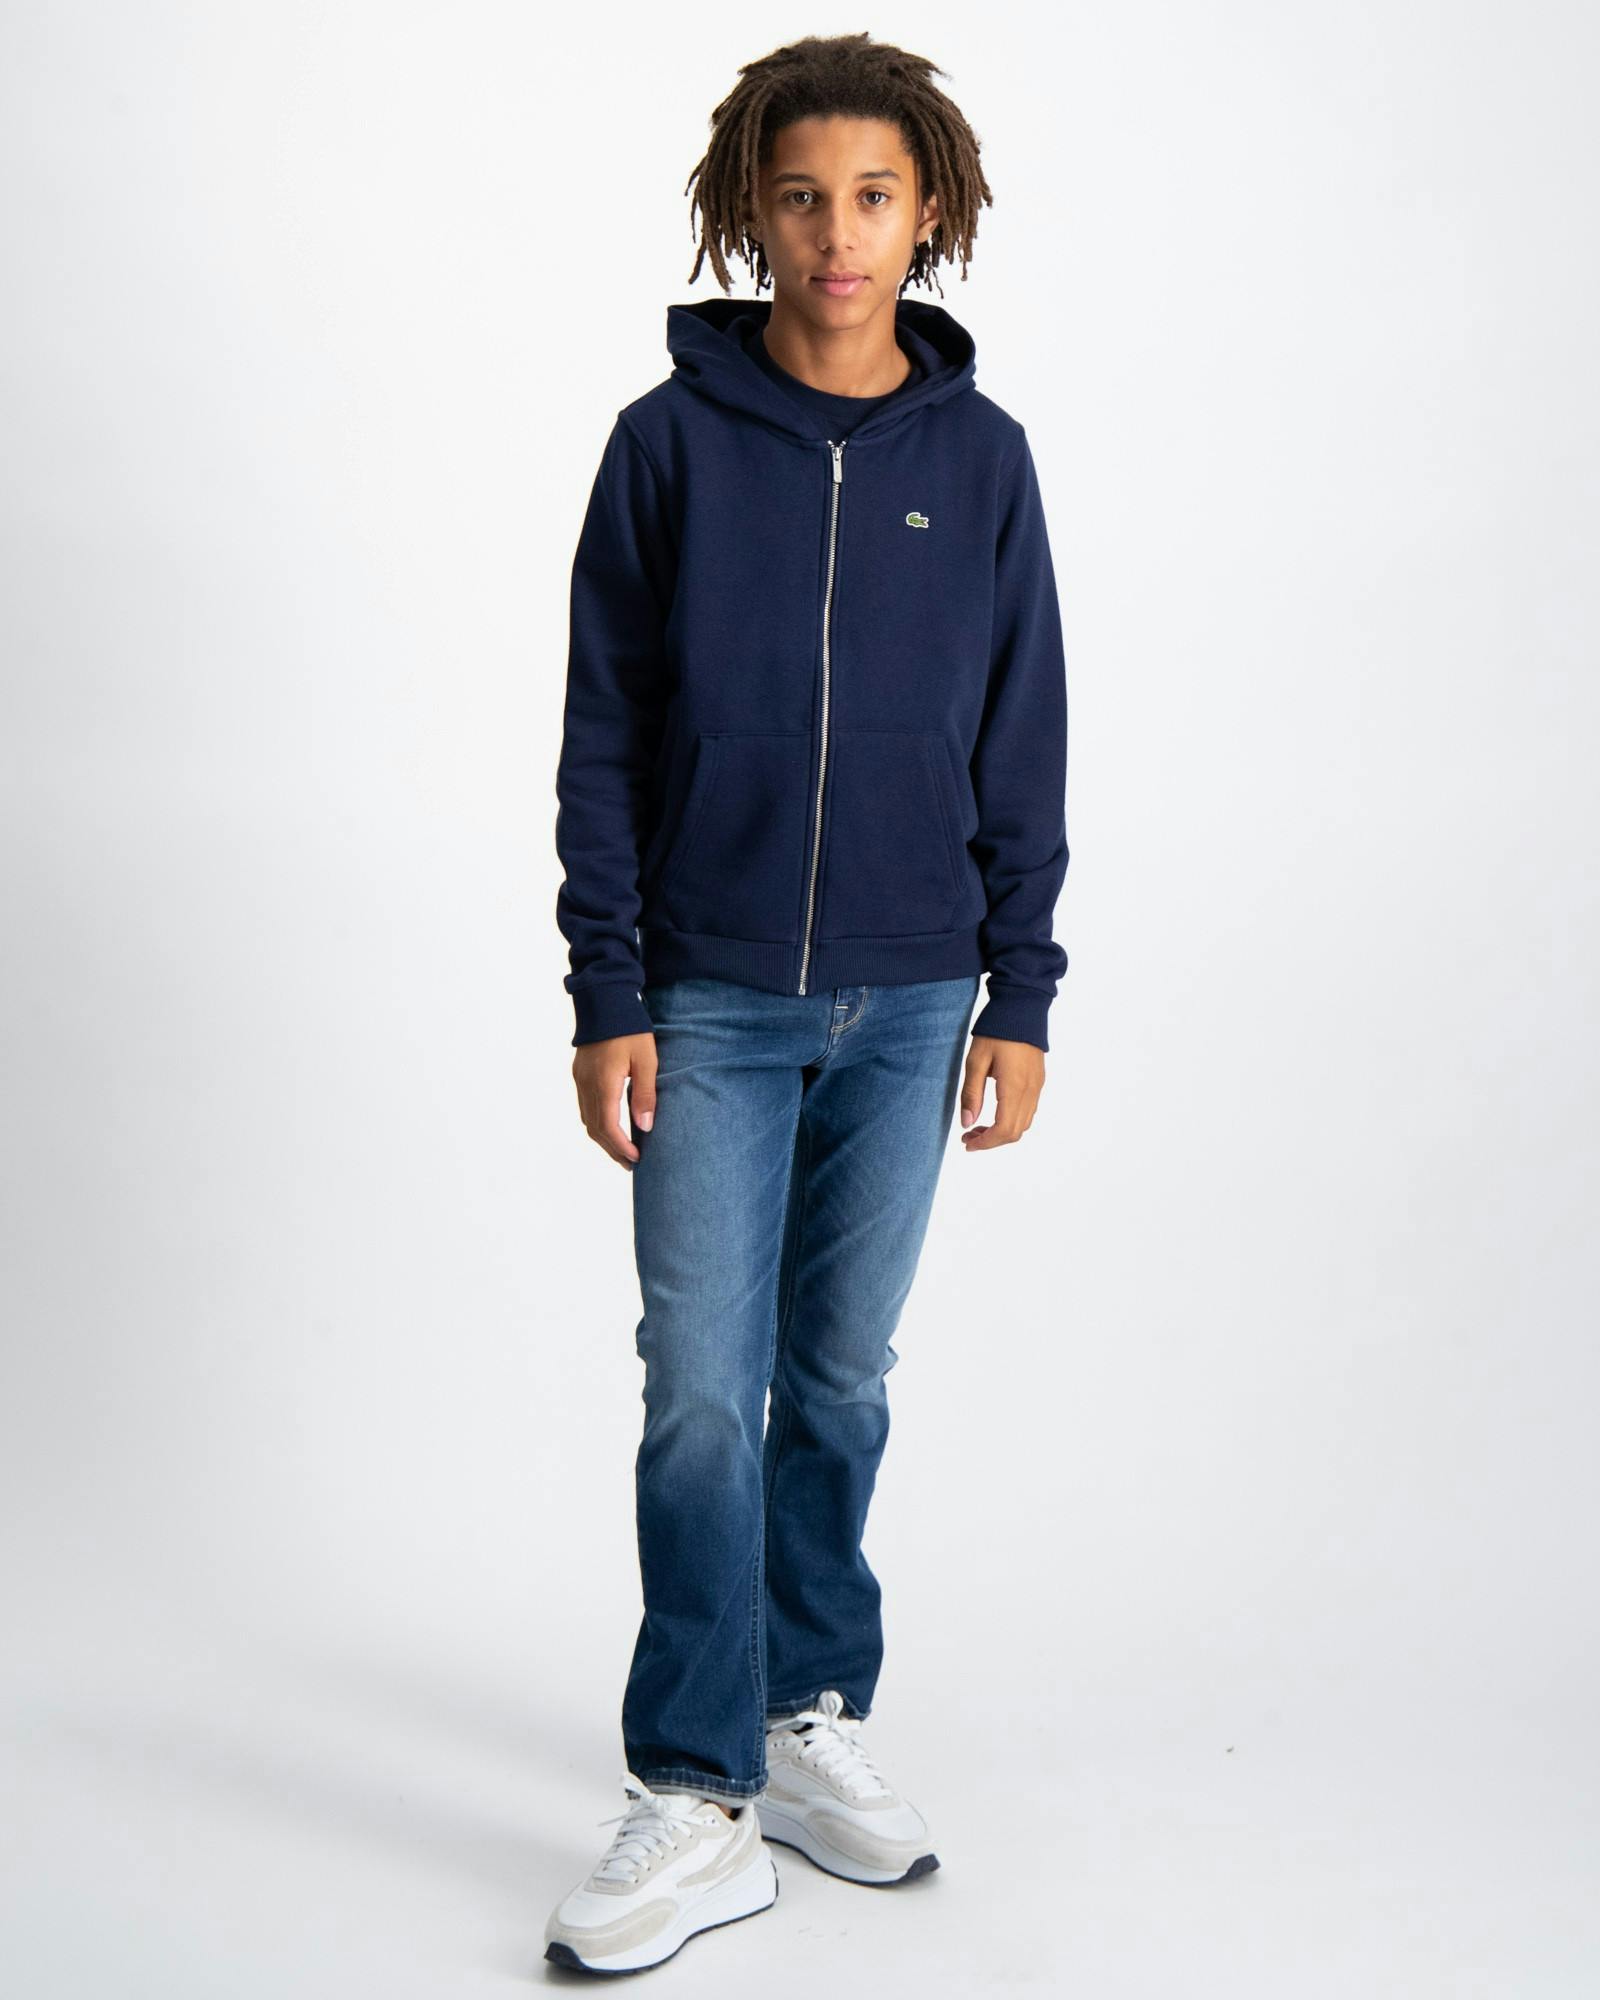 Blau Zip Hoodie für Jungen | Kids Brand Store